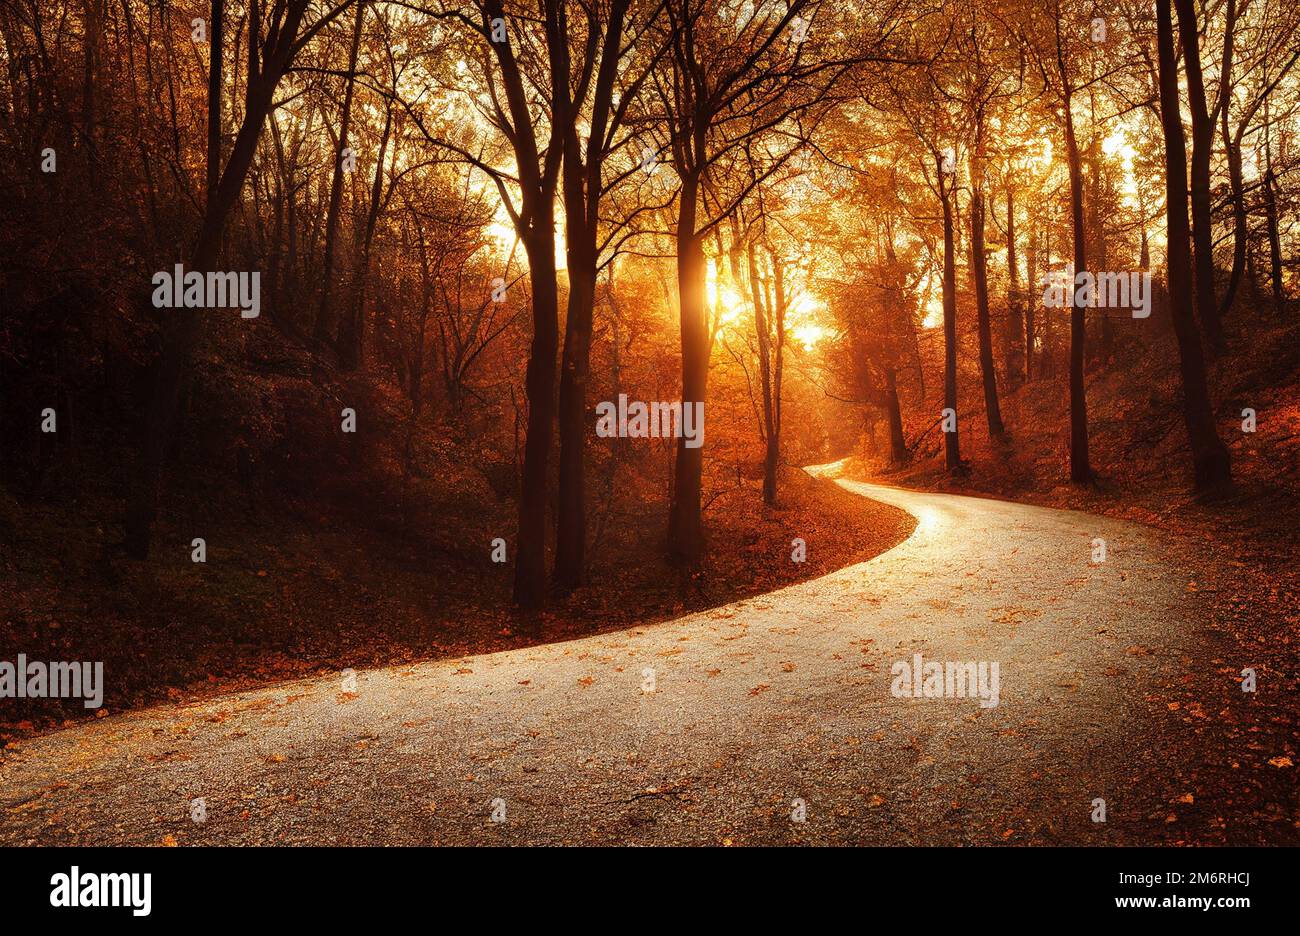 Route sinueuse dans une forêt d'automne colorée en coucher de soleil lumière illustration numérique Banque D'Images